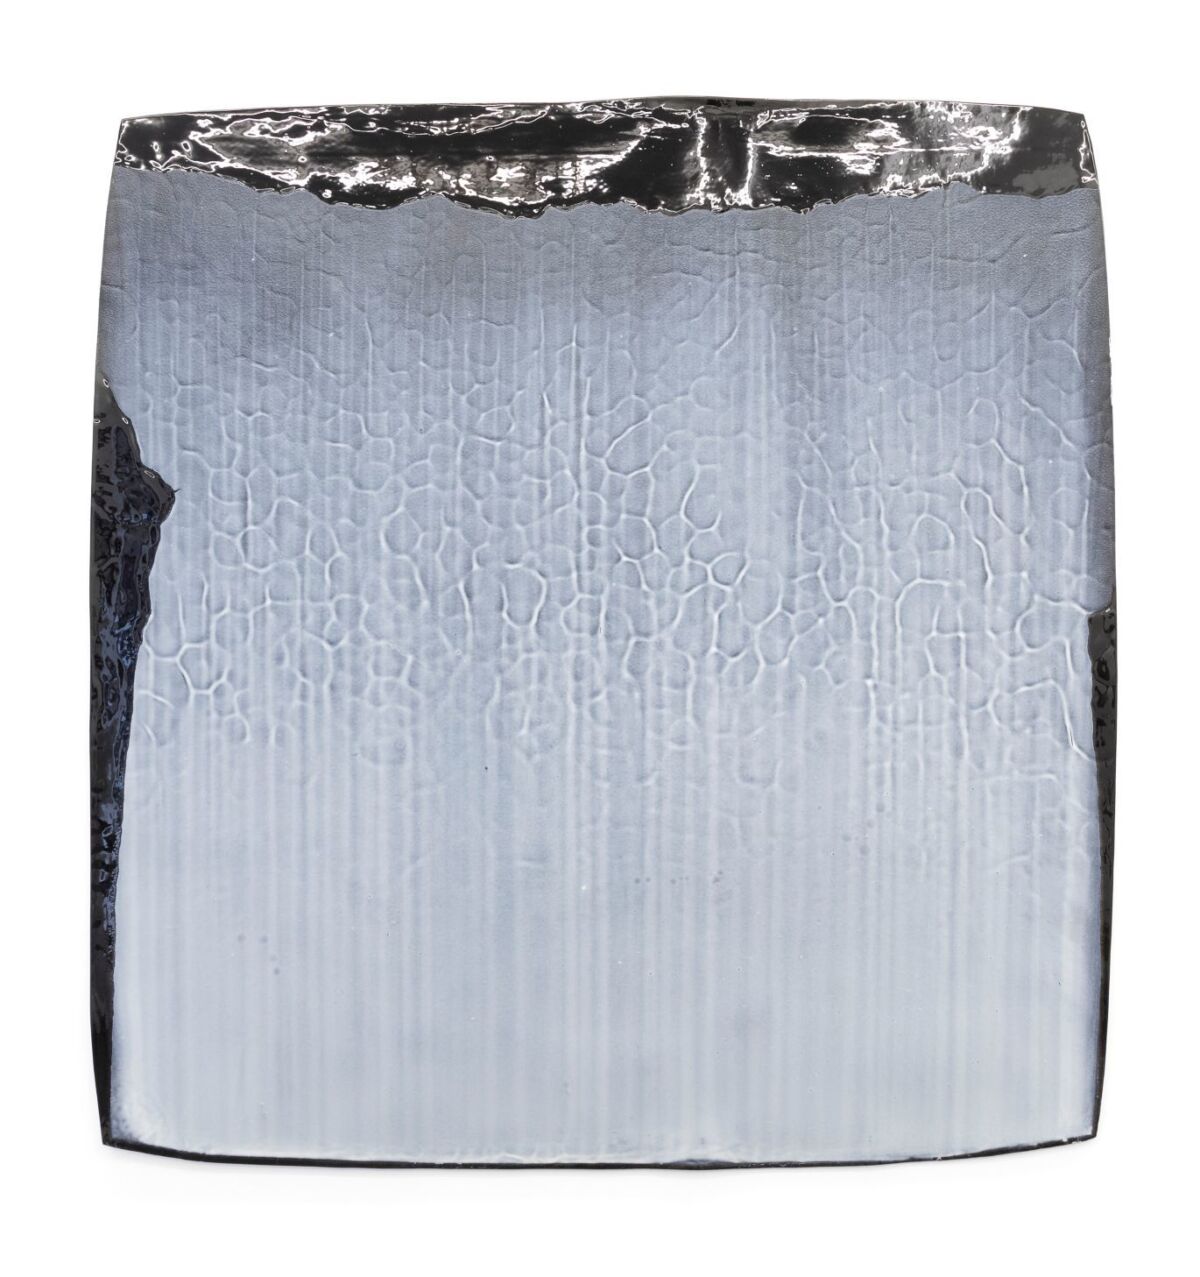 Firkantet porselens bit i kjølige blå/grå toner. Foto av verk.